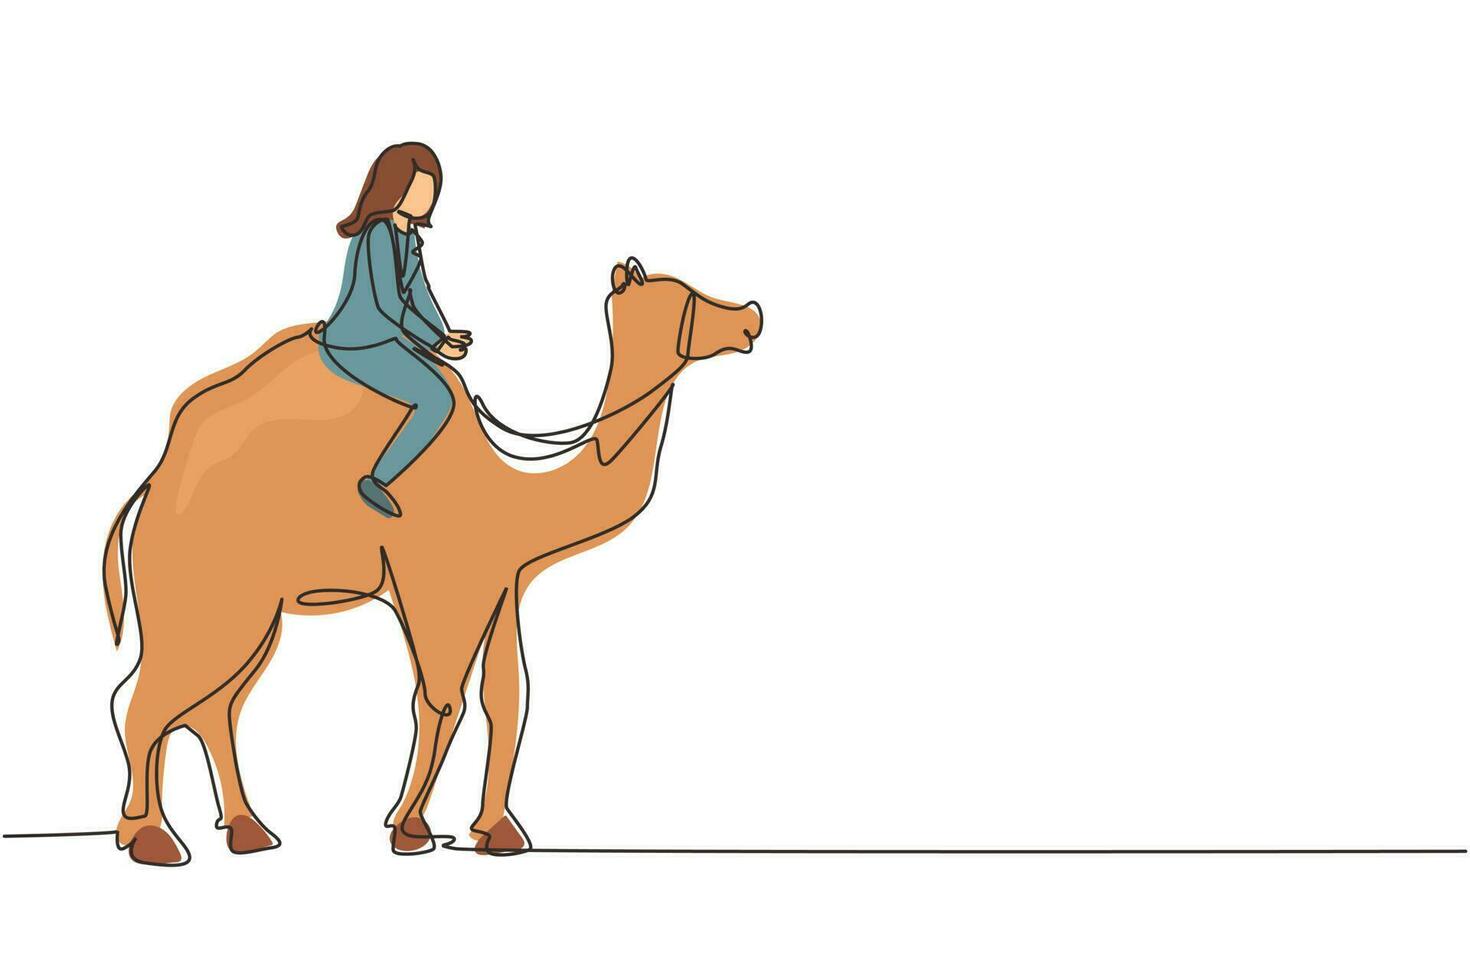 kontinuerlig en rad ritning arabisk affärskvinna rider kamel. investeringar, hausseartad aktiemarknadshandel, stigande obligationstrend. framgångsrik affärskvinna handlare. en rad rita design vektorgrafik vektor